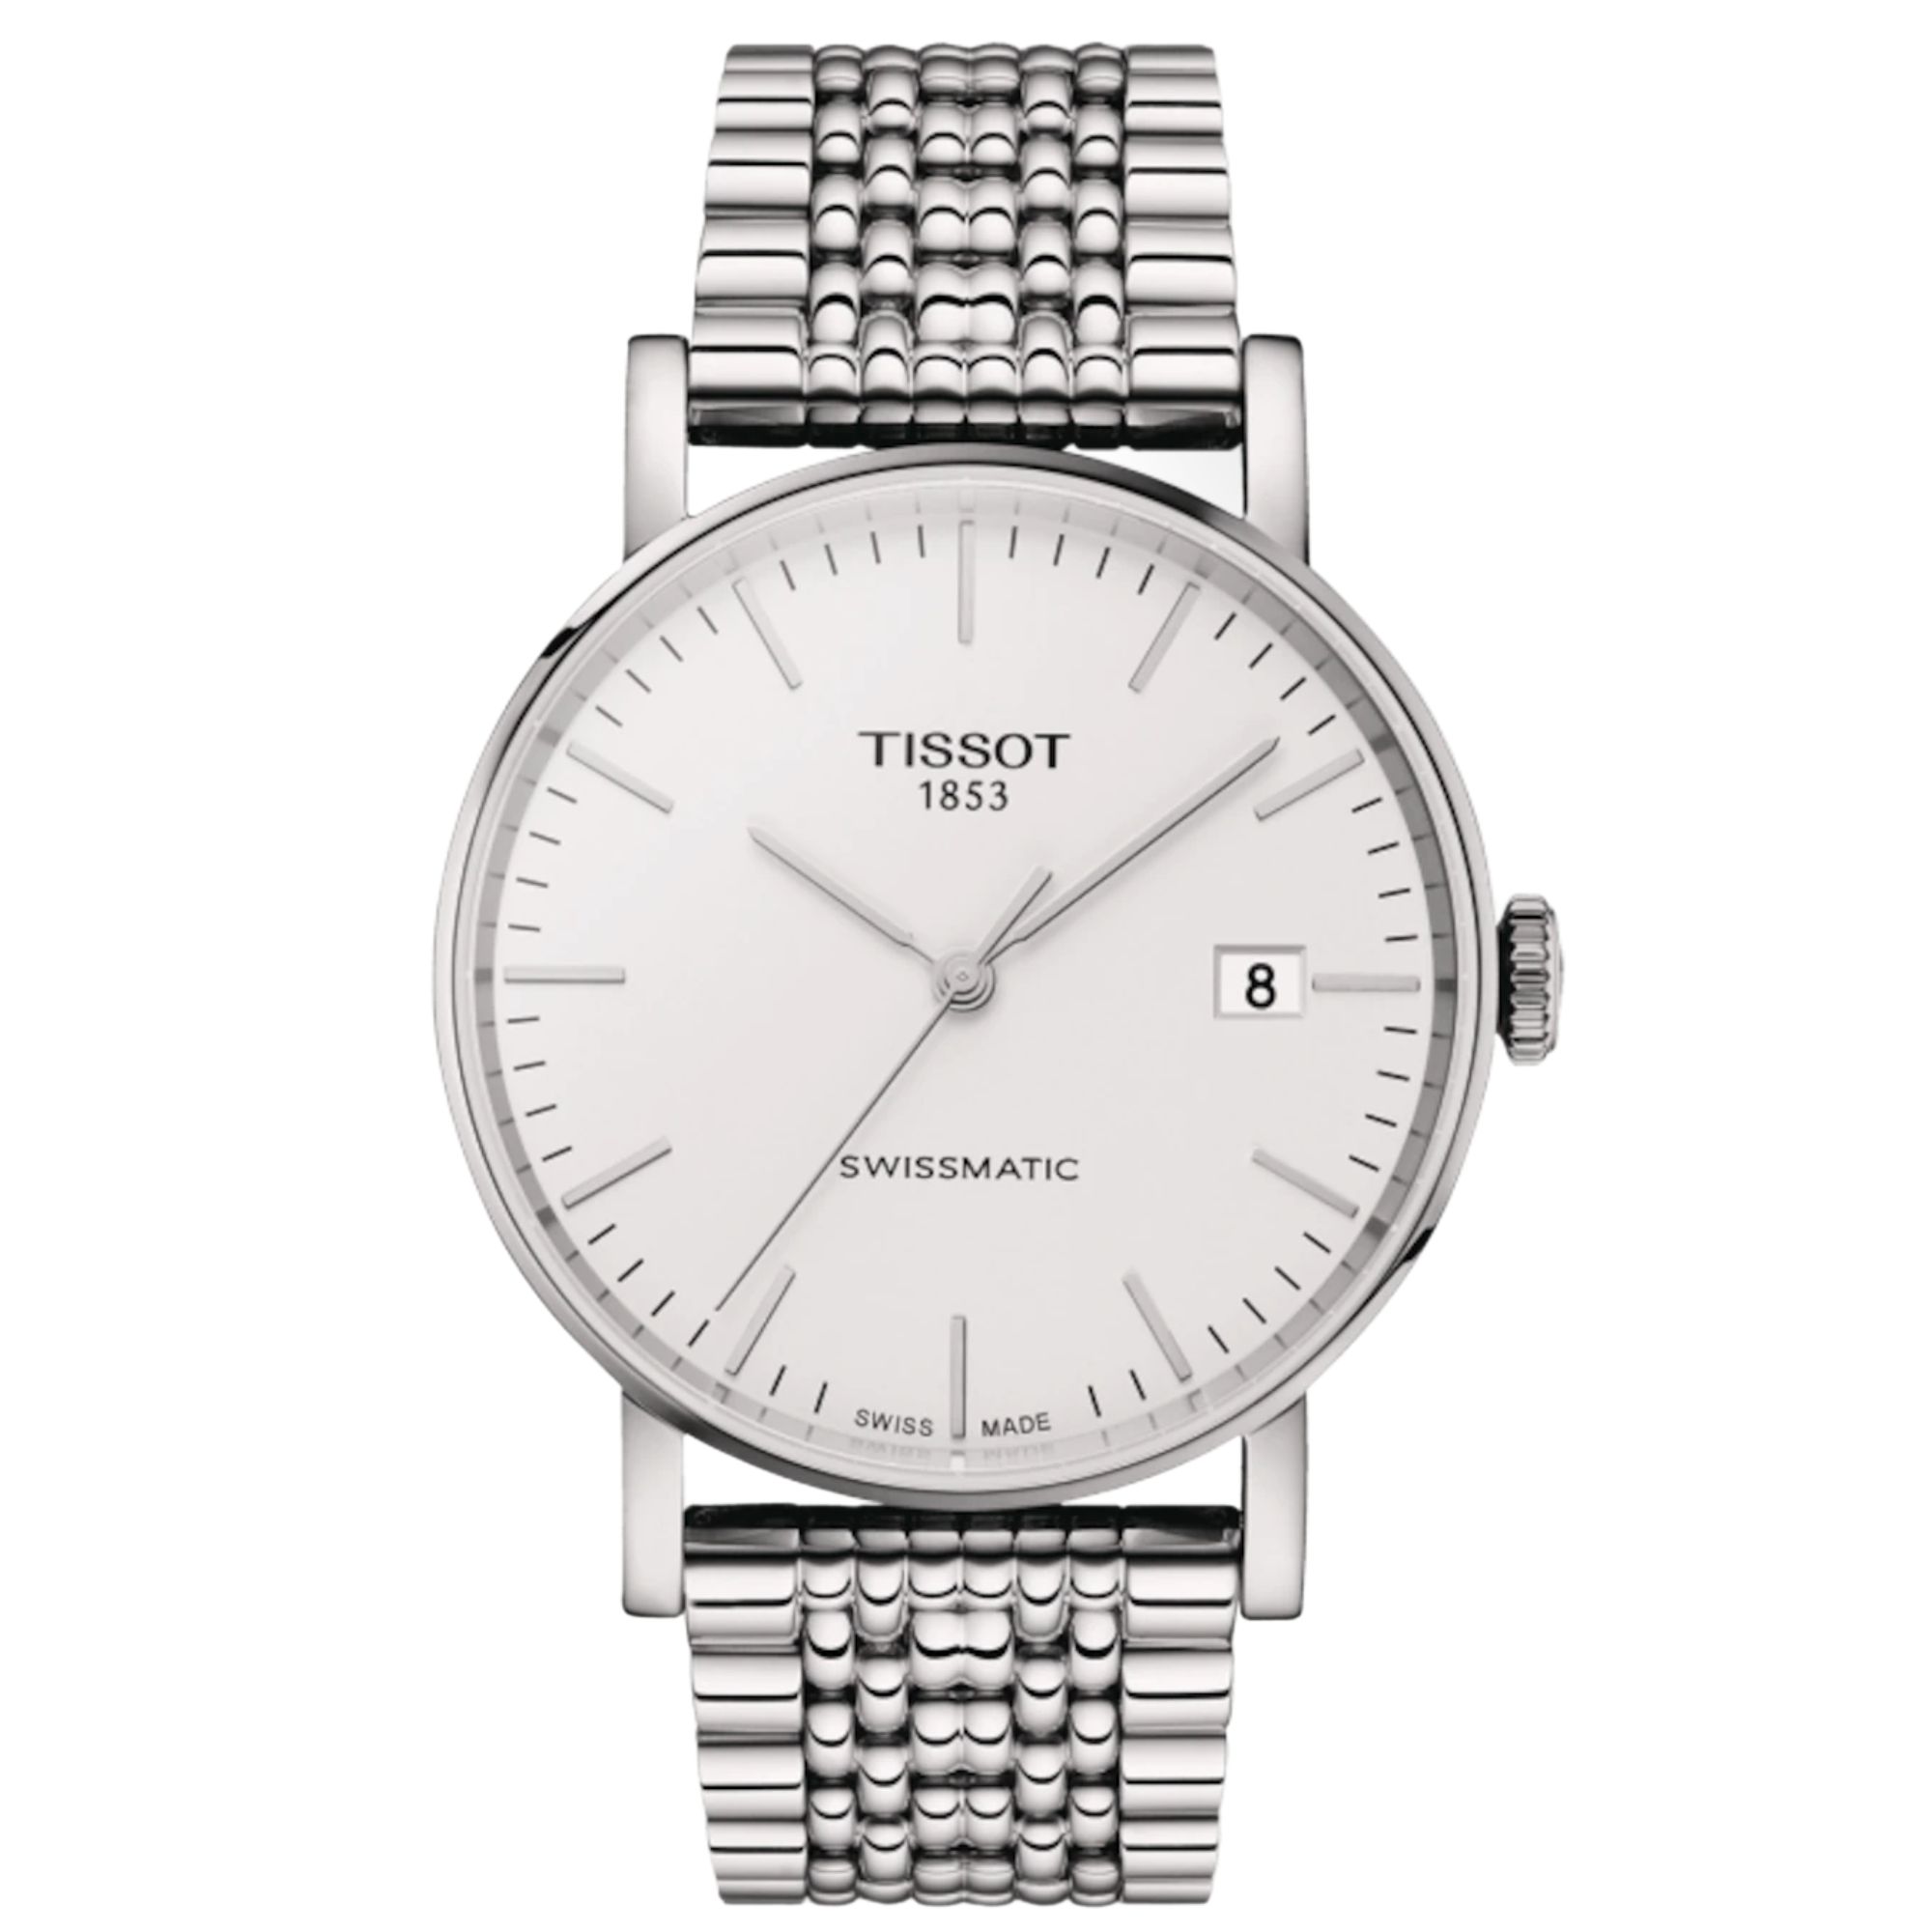 Relógio Tissot Everytime Swissmatic Automático Prata T109.407.11.031.00